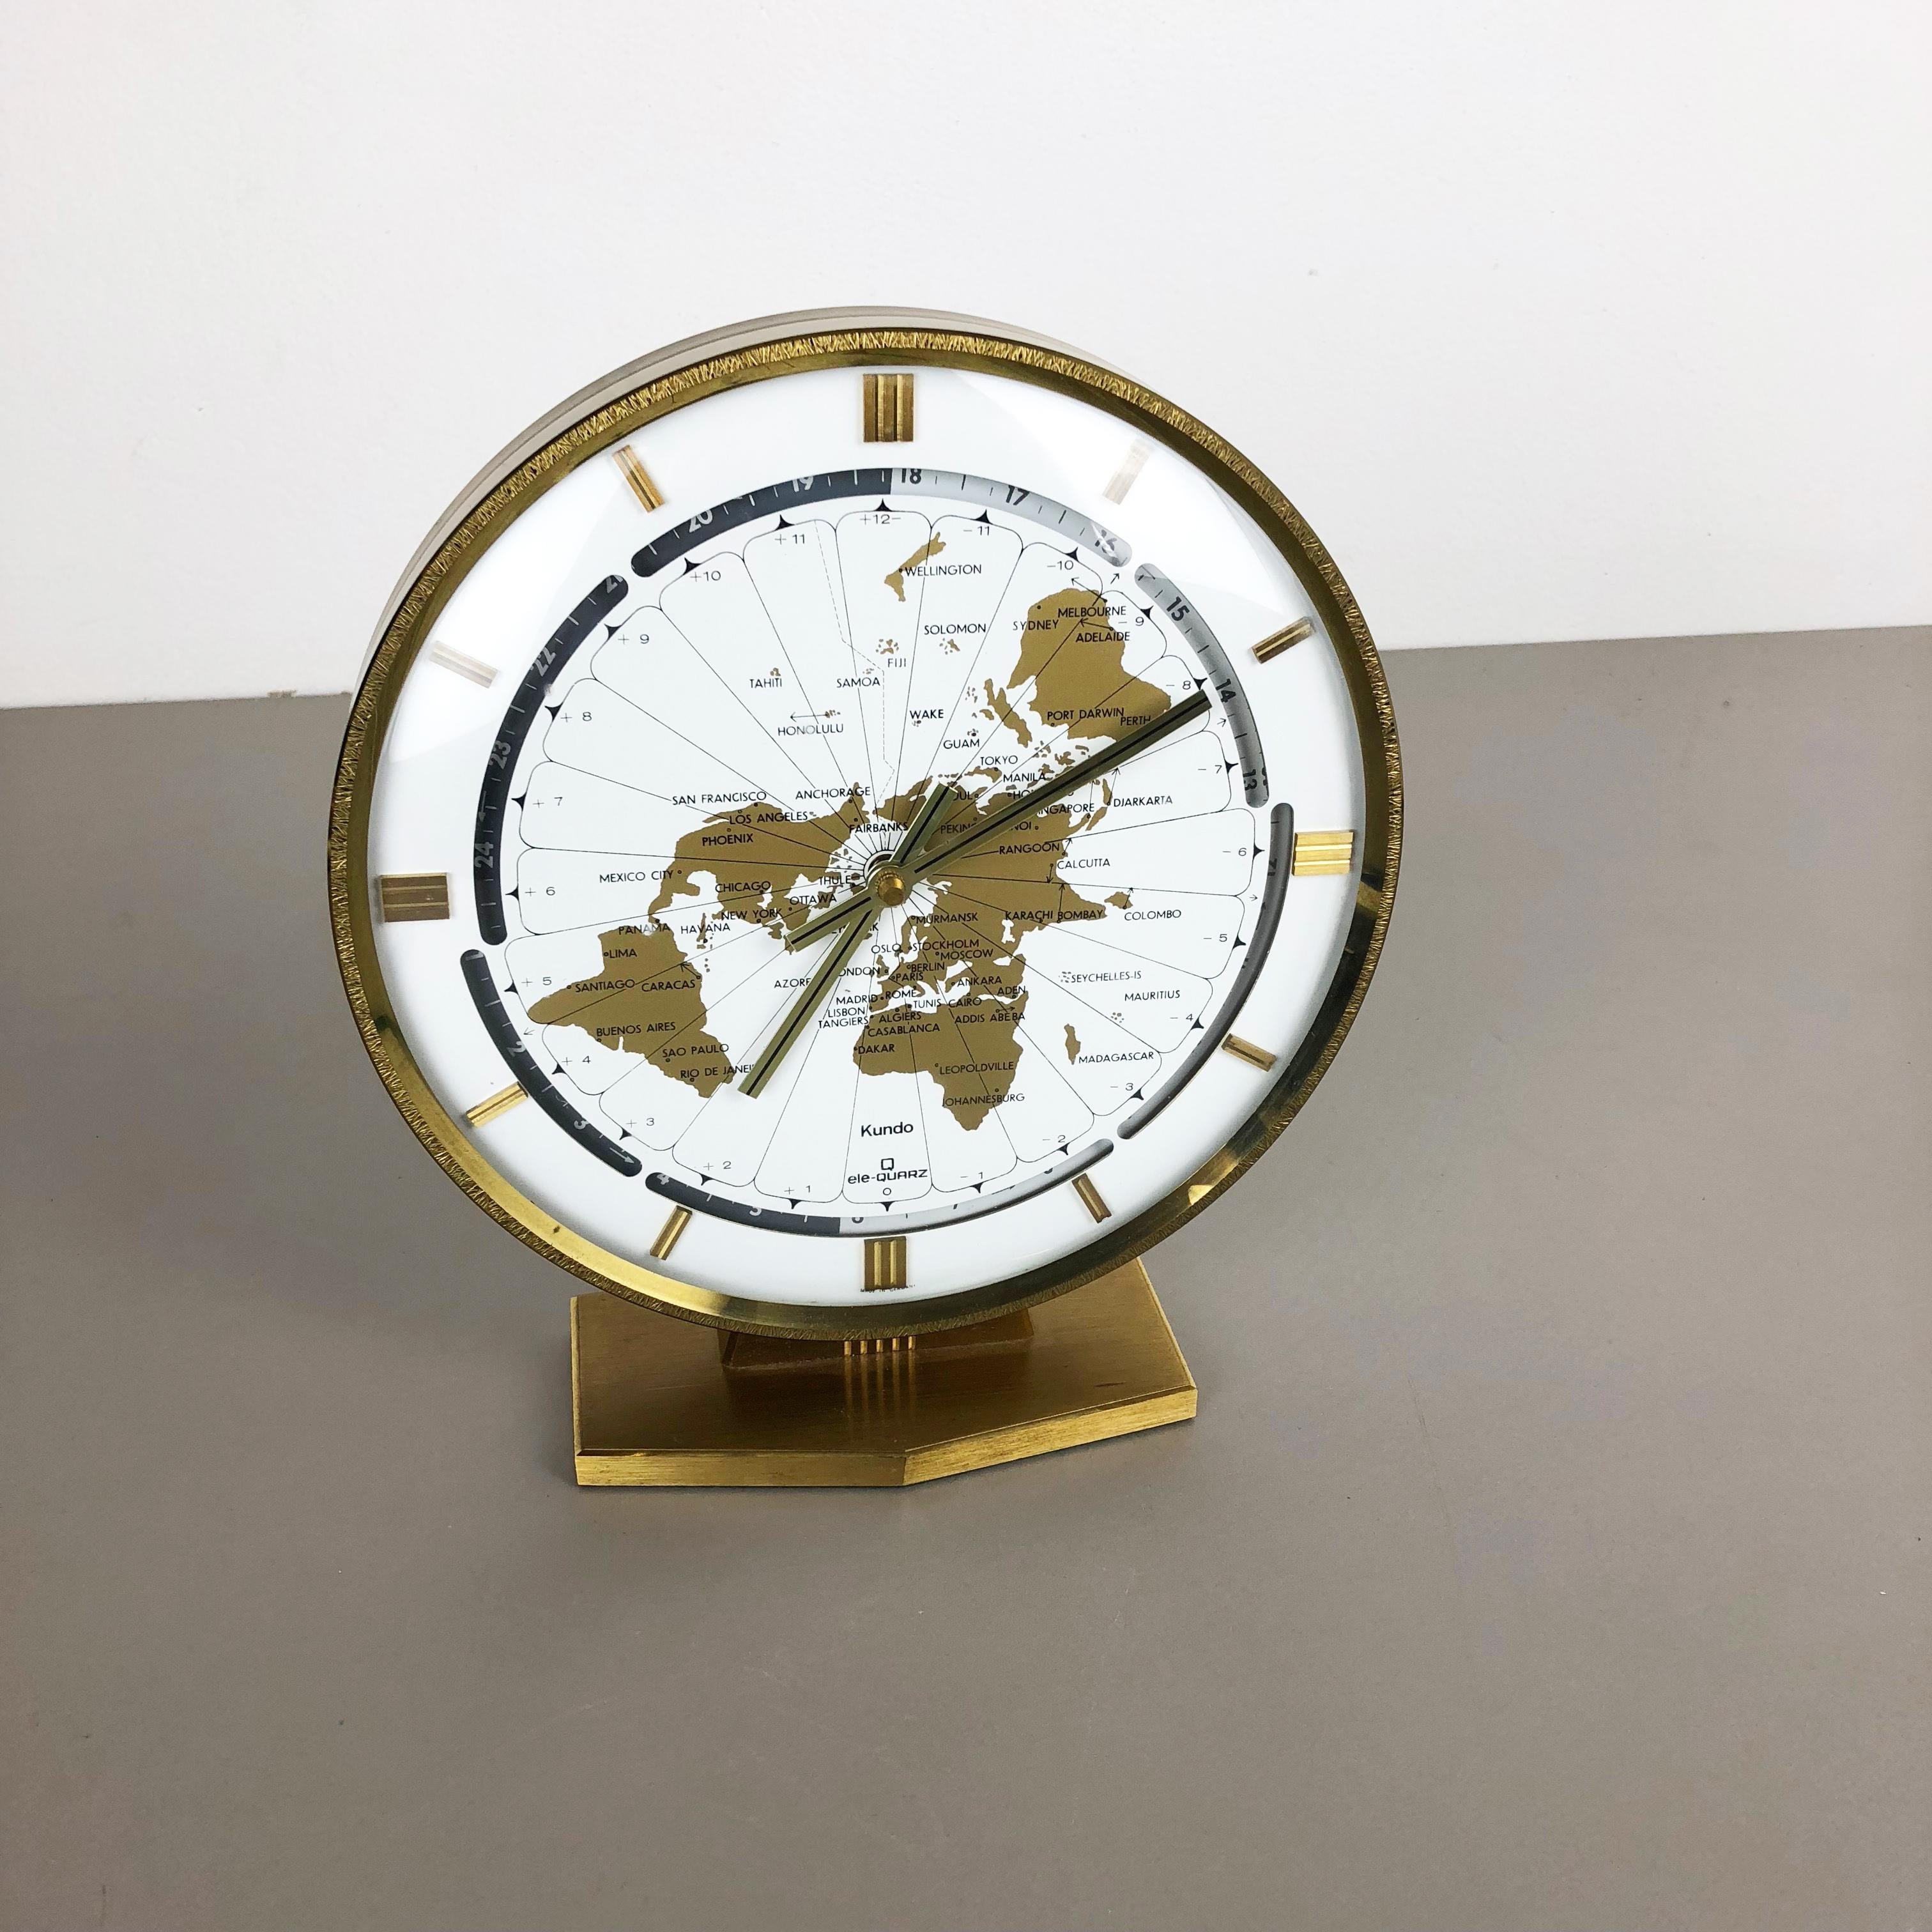 kundo clock made in germany